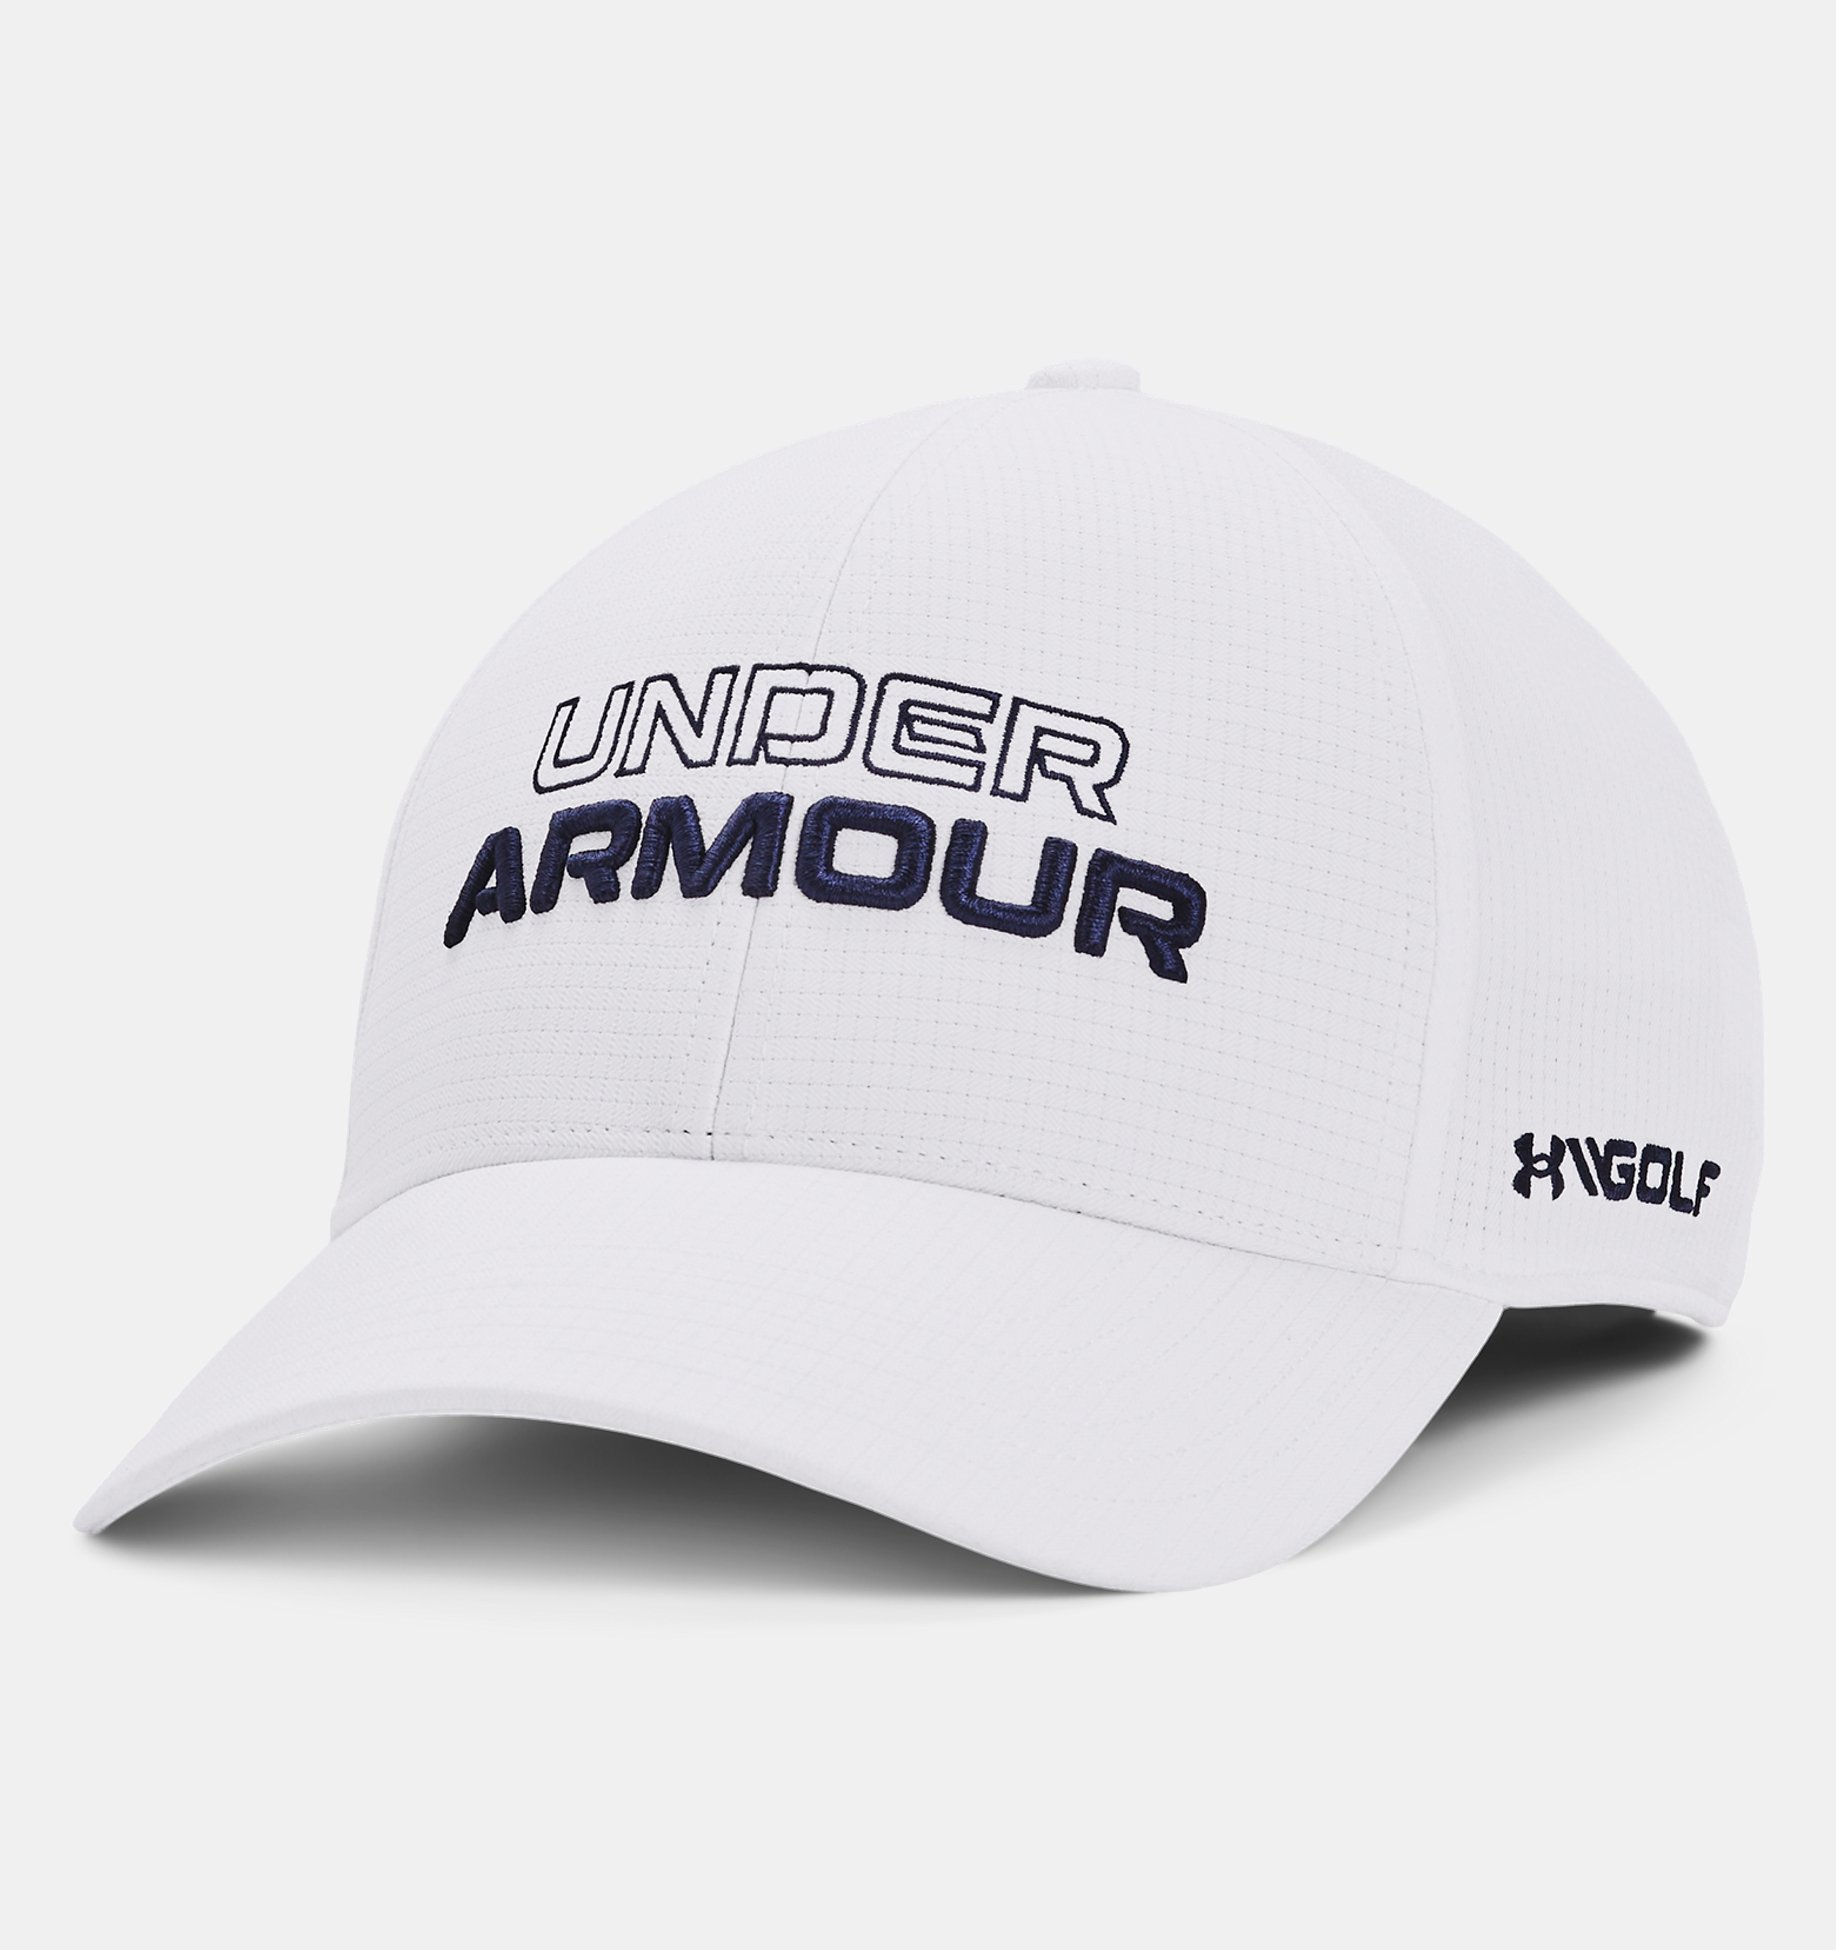 Admisión portugués Encantador Men's UA Jordan Spieth Golf Hat | Under Armour